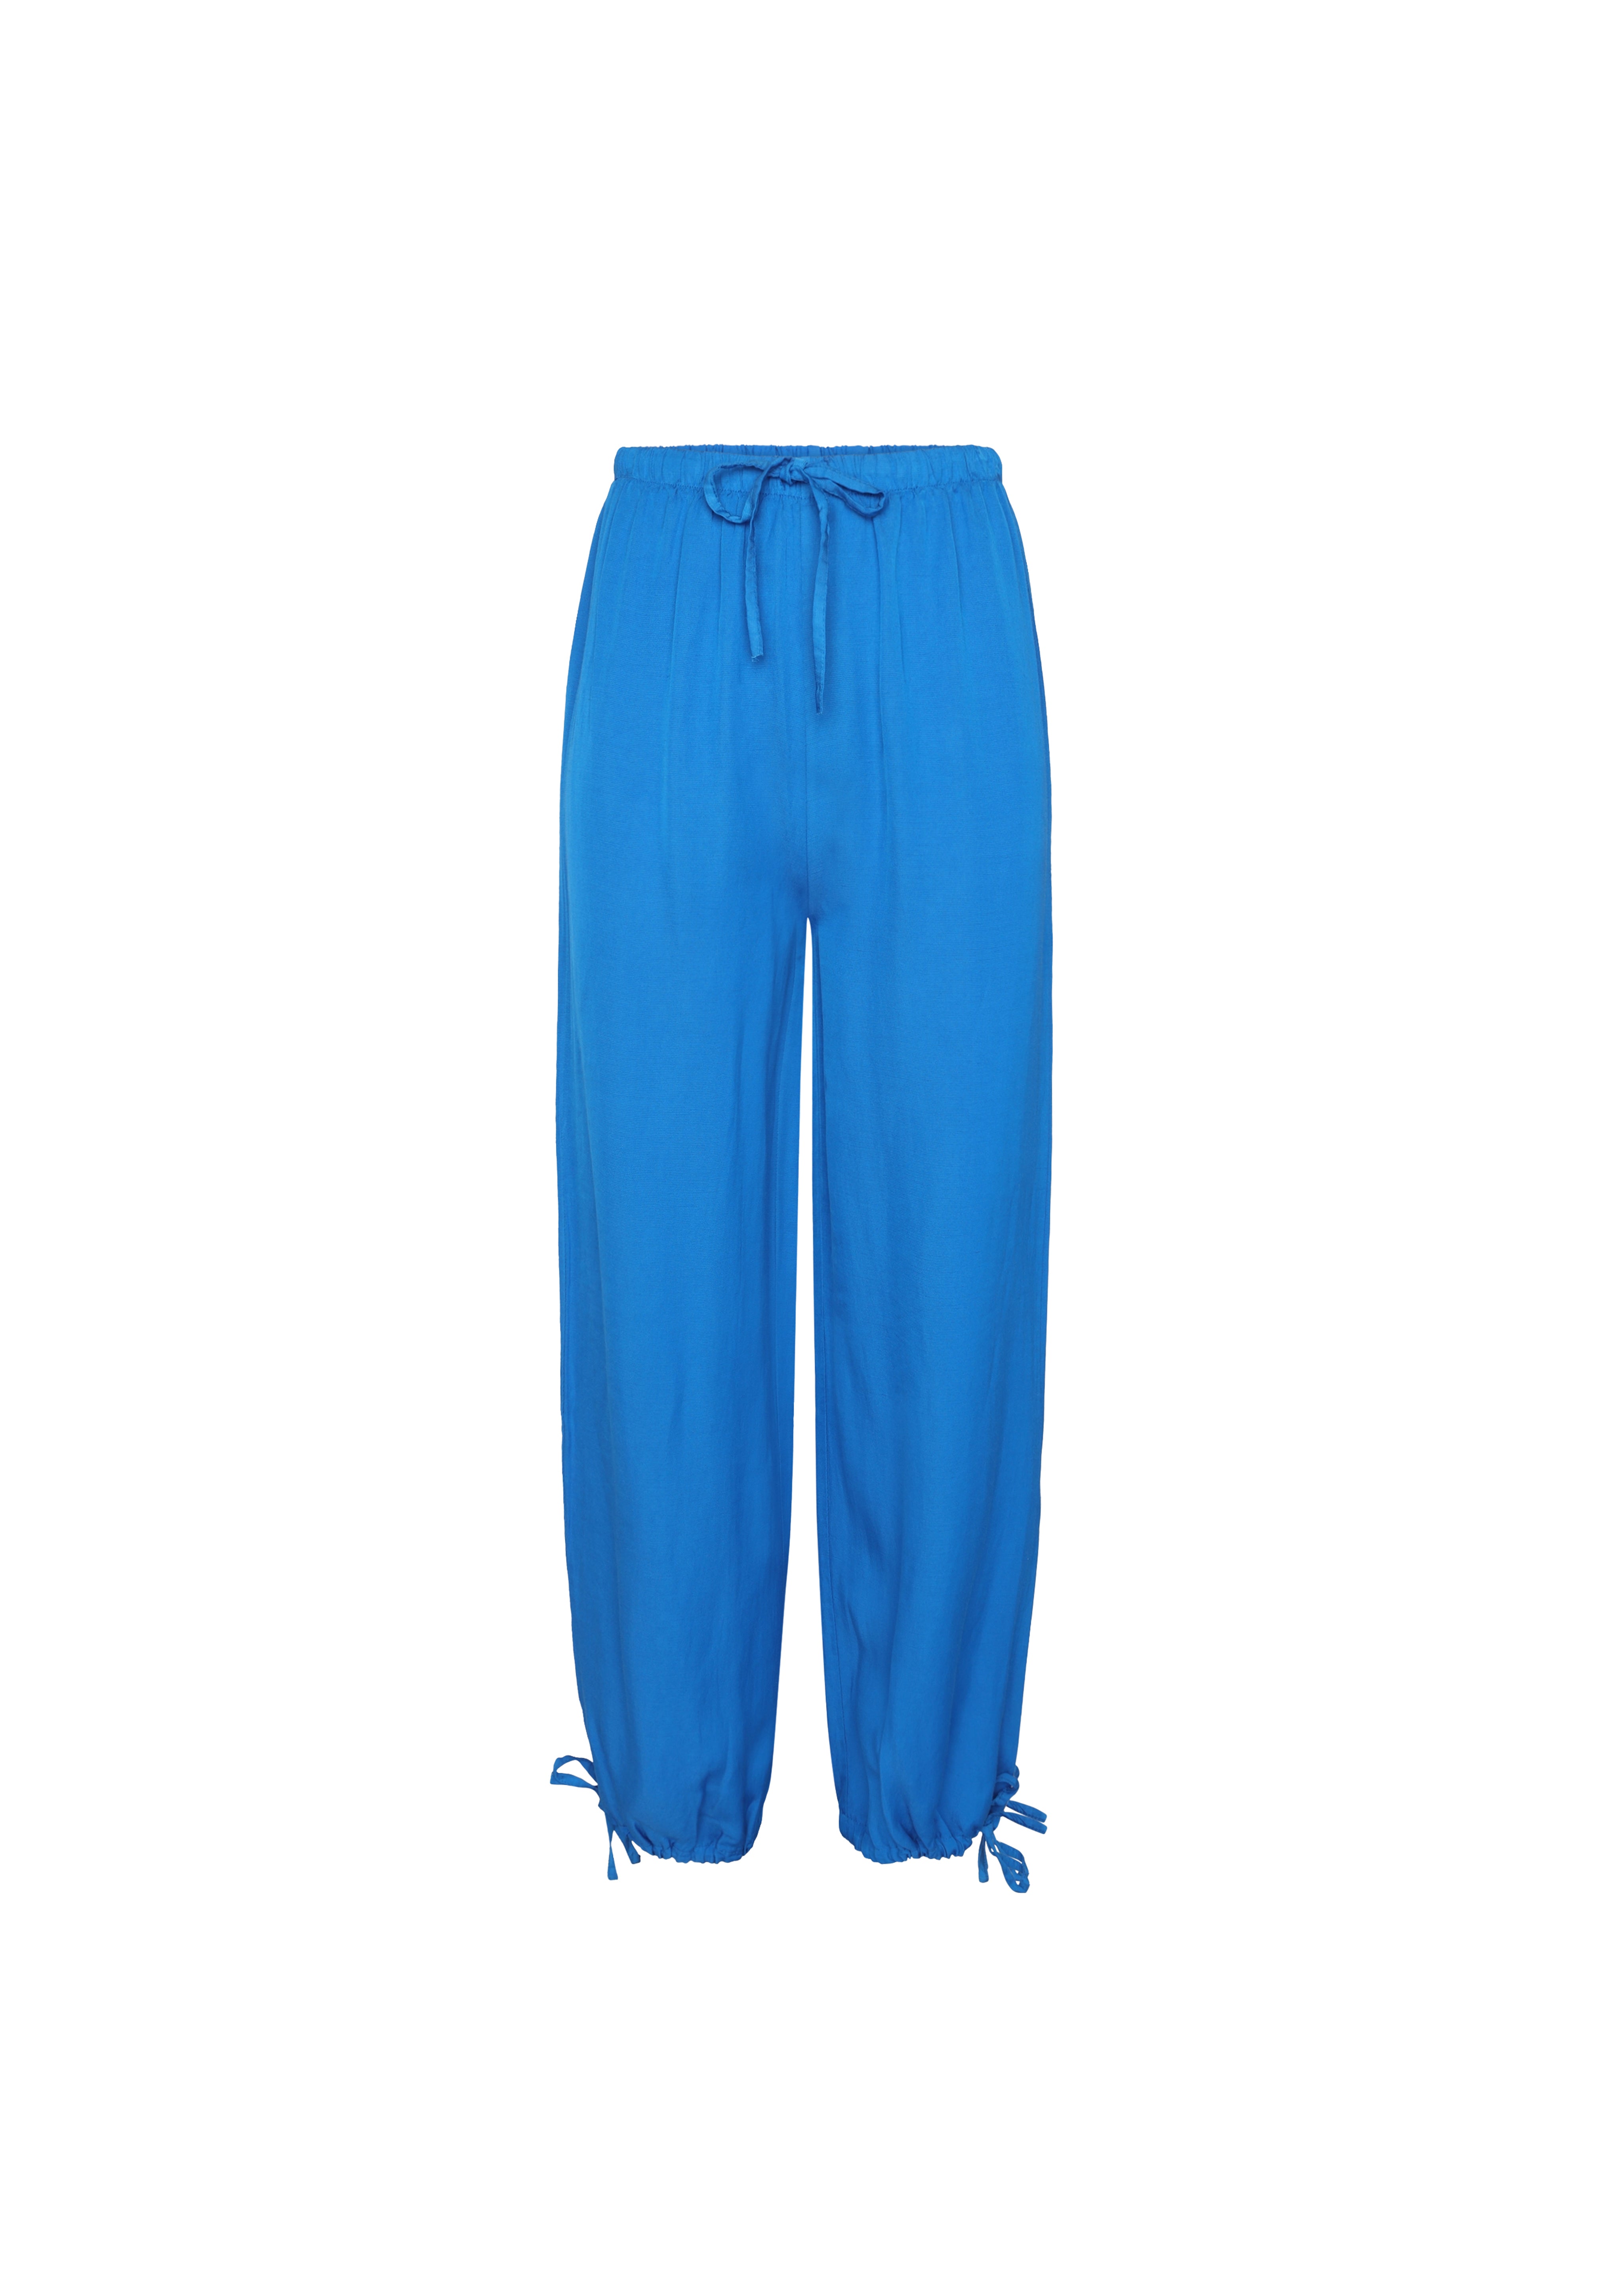 Pantalon CLODIE Bleu electrique